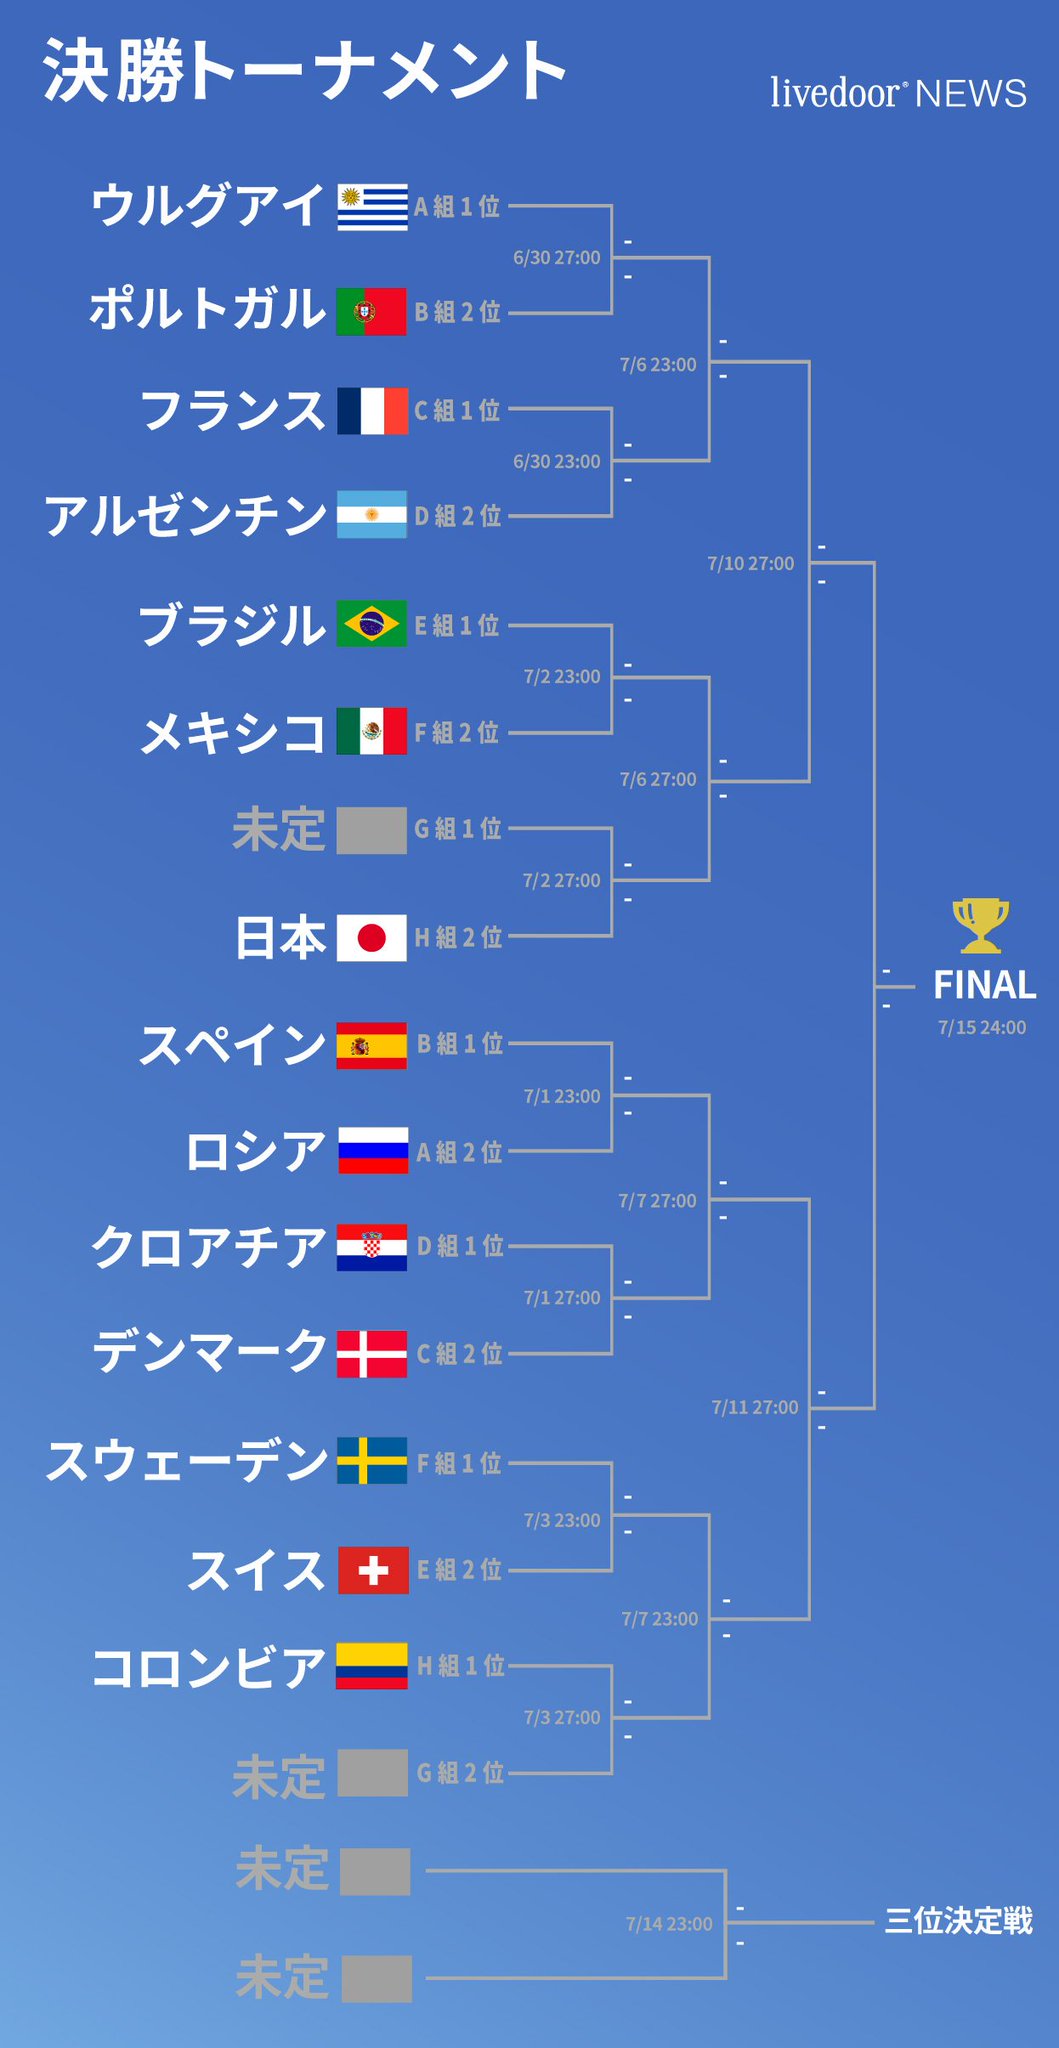 ライブドアニュース 日本代表 決勝t進出 決勝トーナメント1回戦の相手は このあと日本時間27 00キックオフ のイングランドvsベルギーの結果によって決定します イングランド勝利 イングランド ベルギー勝利 ベルギー 引き分け